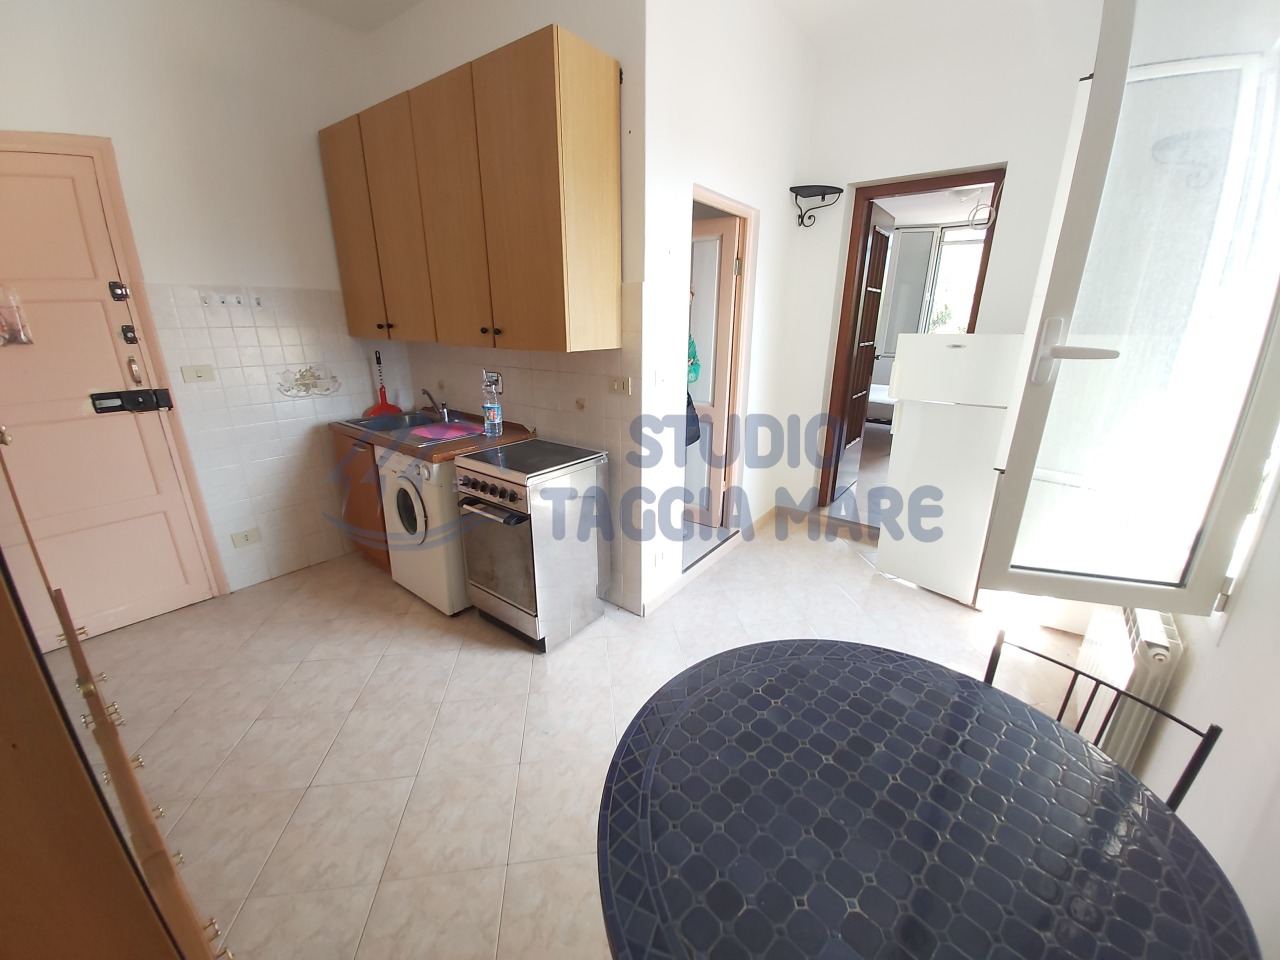 Appartamento in vendita a SanRemo, 2 locali, prezzo € 50.000 | CambioCasa.it